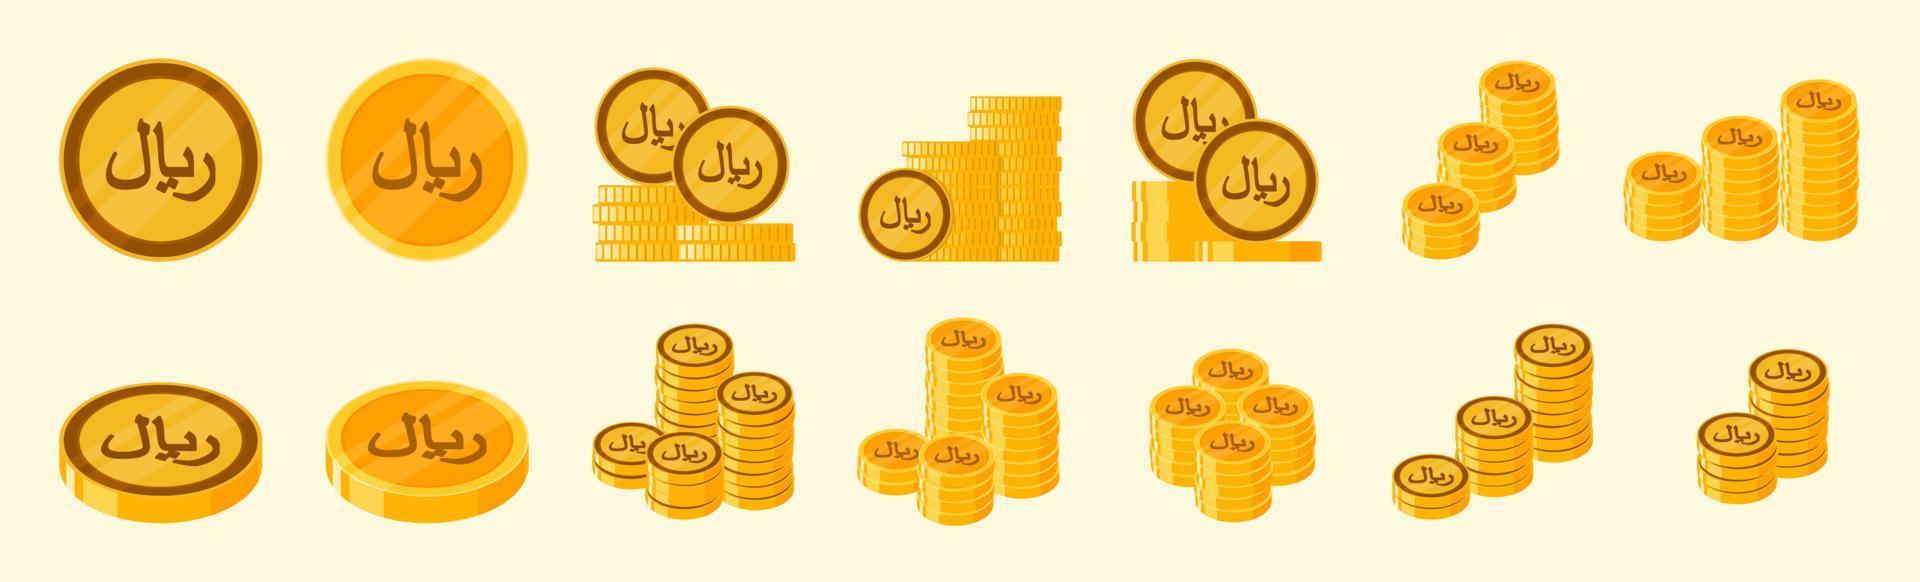 conjunto de iconos de moneda riyal saudí vector